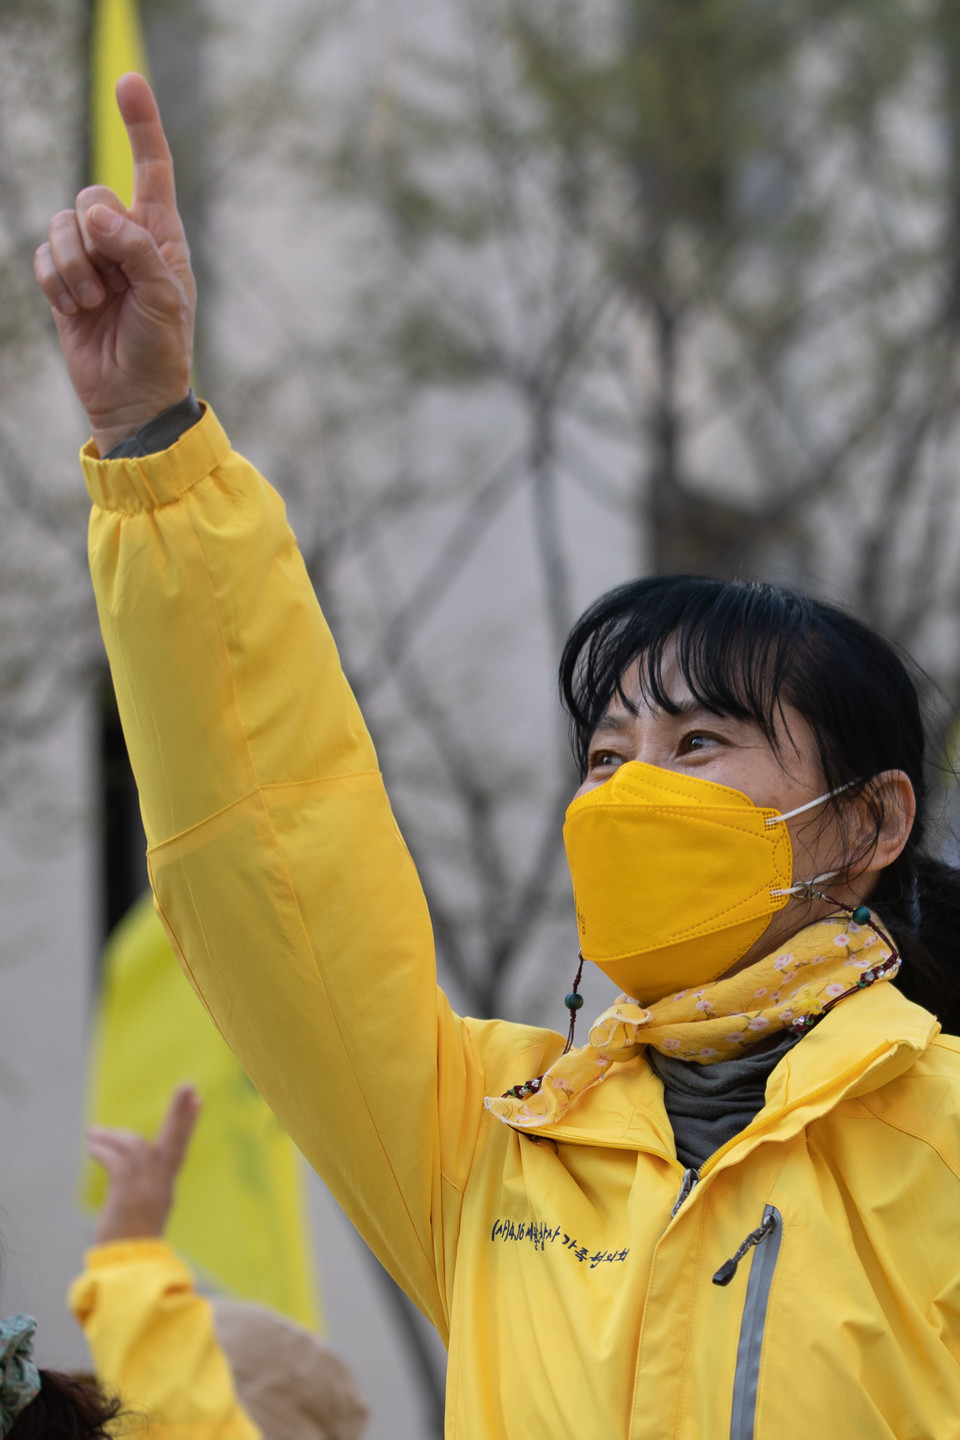 4월 9일 서울 중구 세월호참사 8주기 성역없는 진상규명 완수와 생명안전사회 건설을 위한 국민대회가 열린 가운데 참가자들이 춤을 추고 있다. ⓒ 추영욱 기자